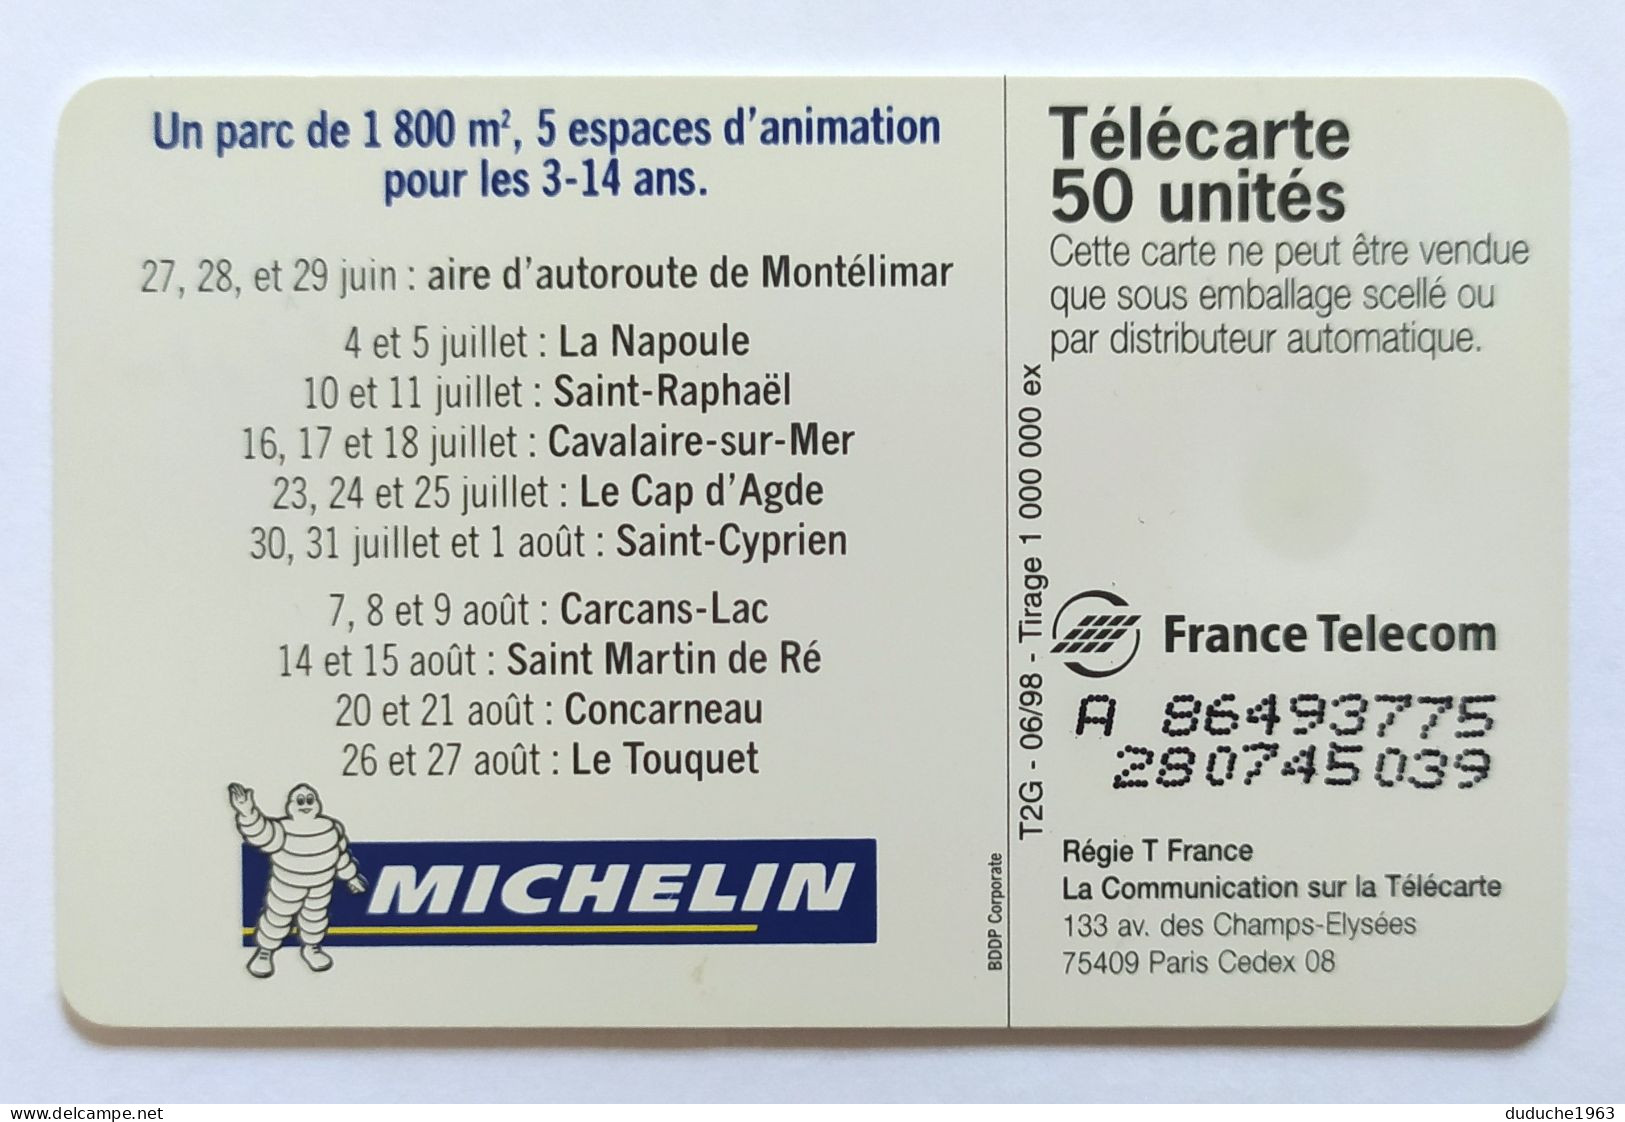 Télécarte France - Michelin - Unclassified